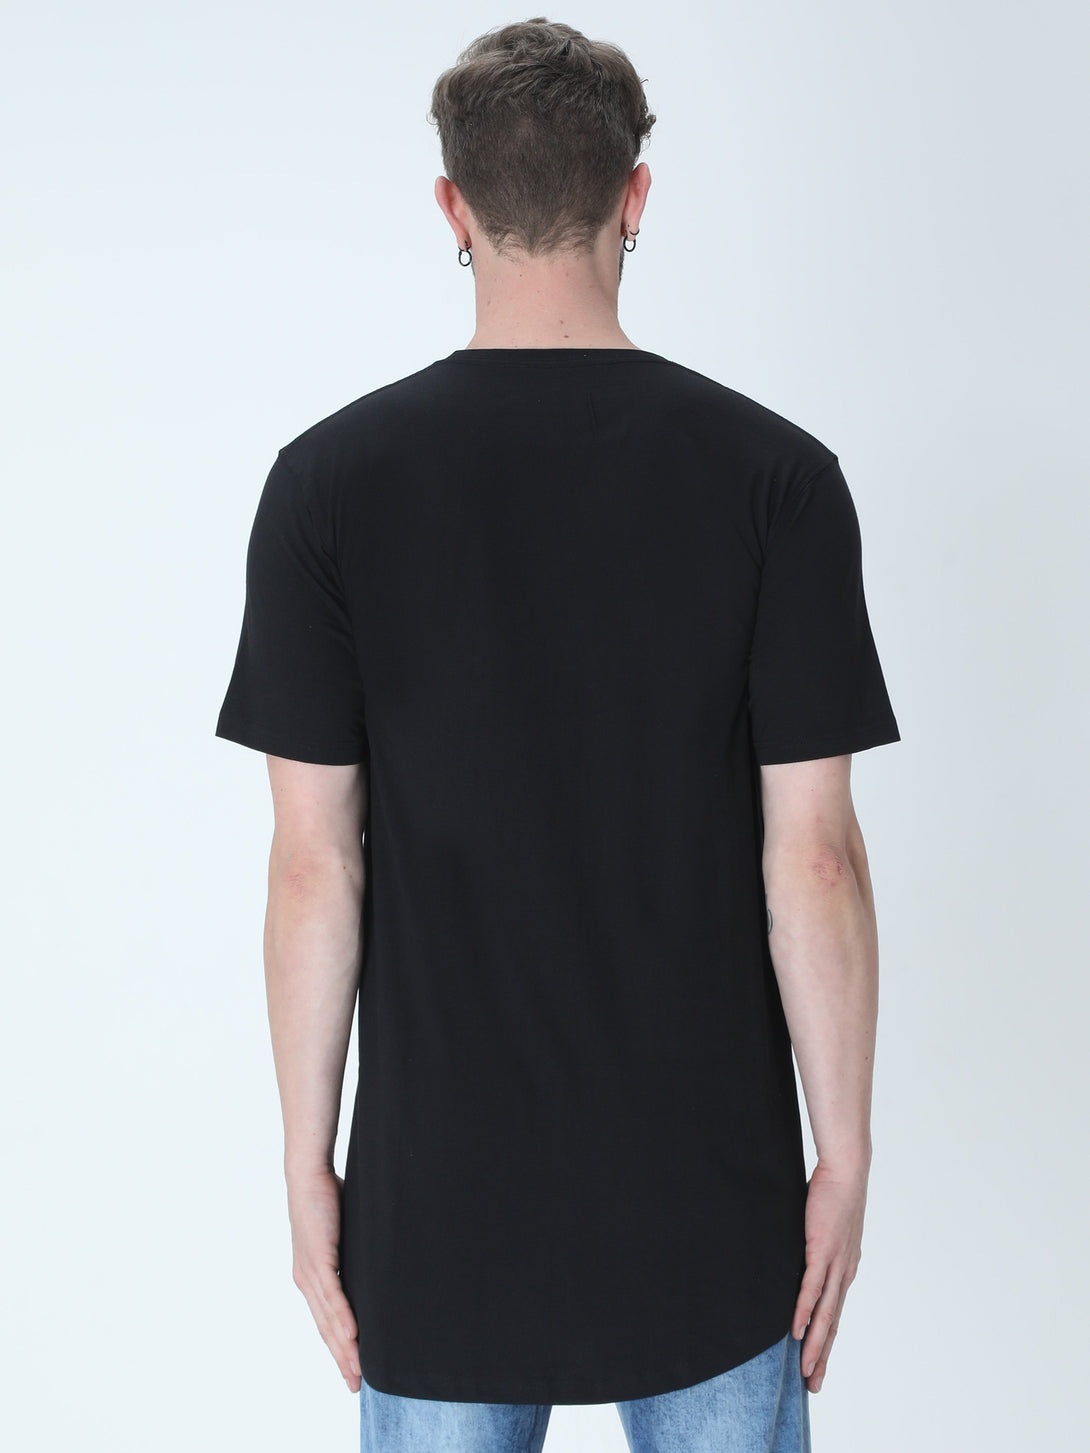 Black Longline T-Shirt For Men - WowWaves - 6